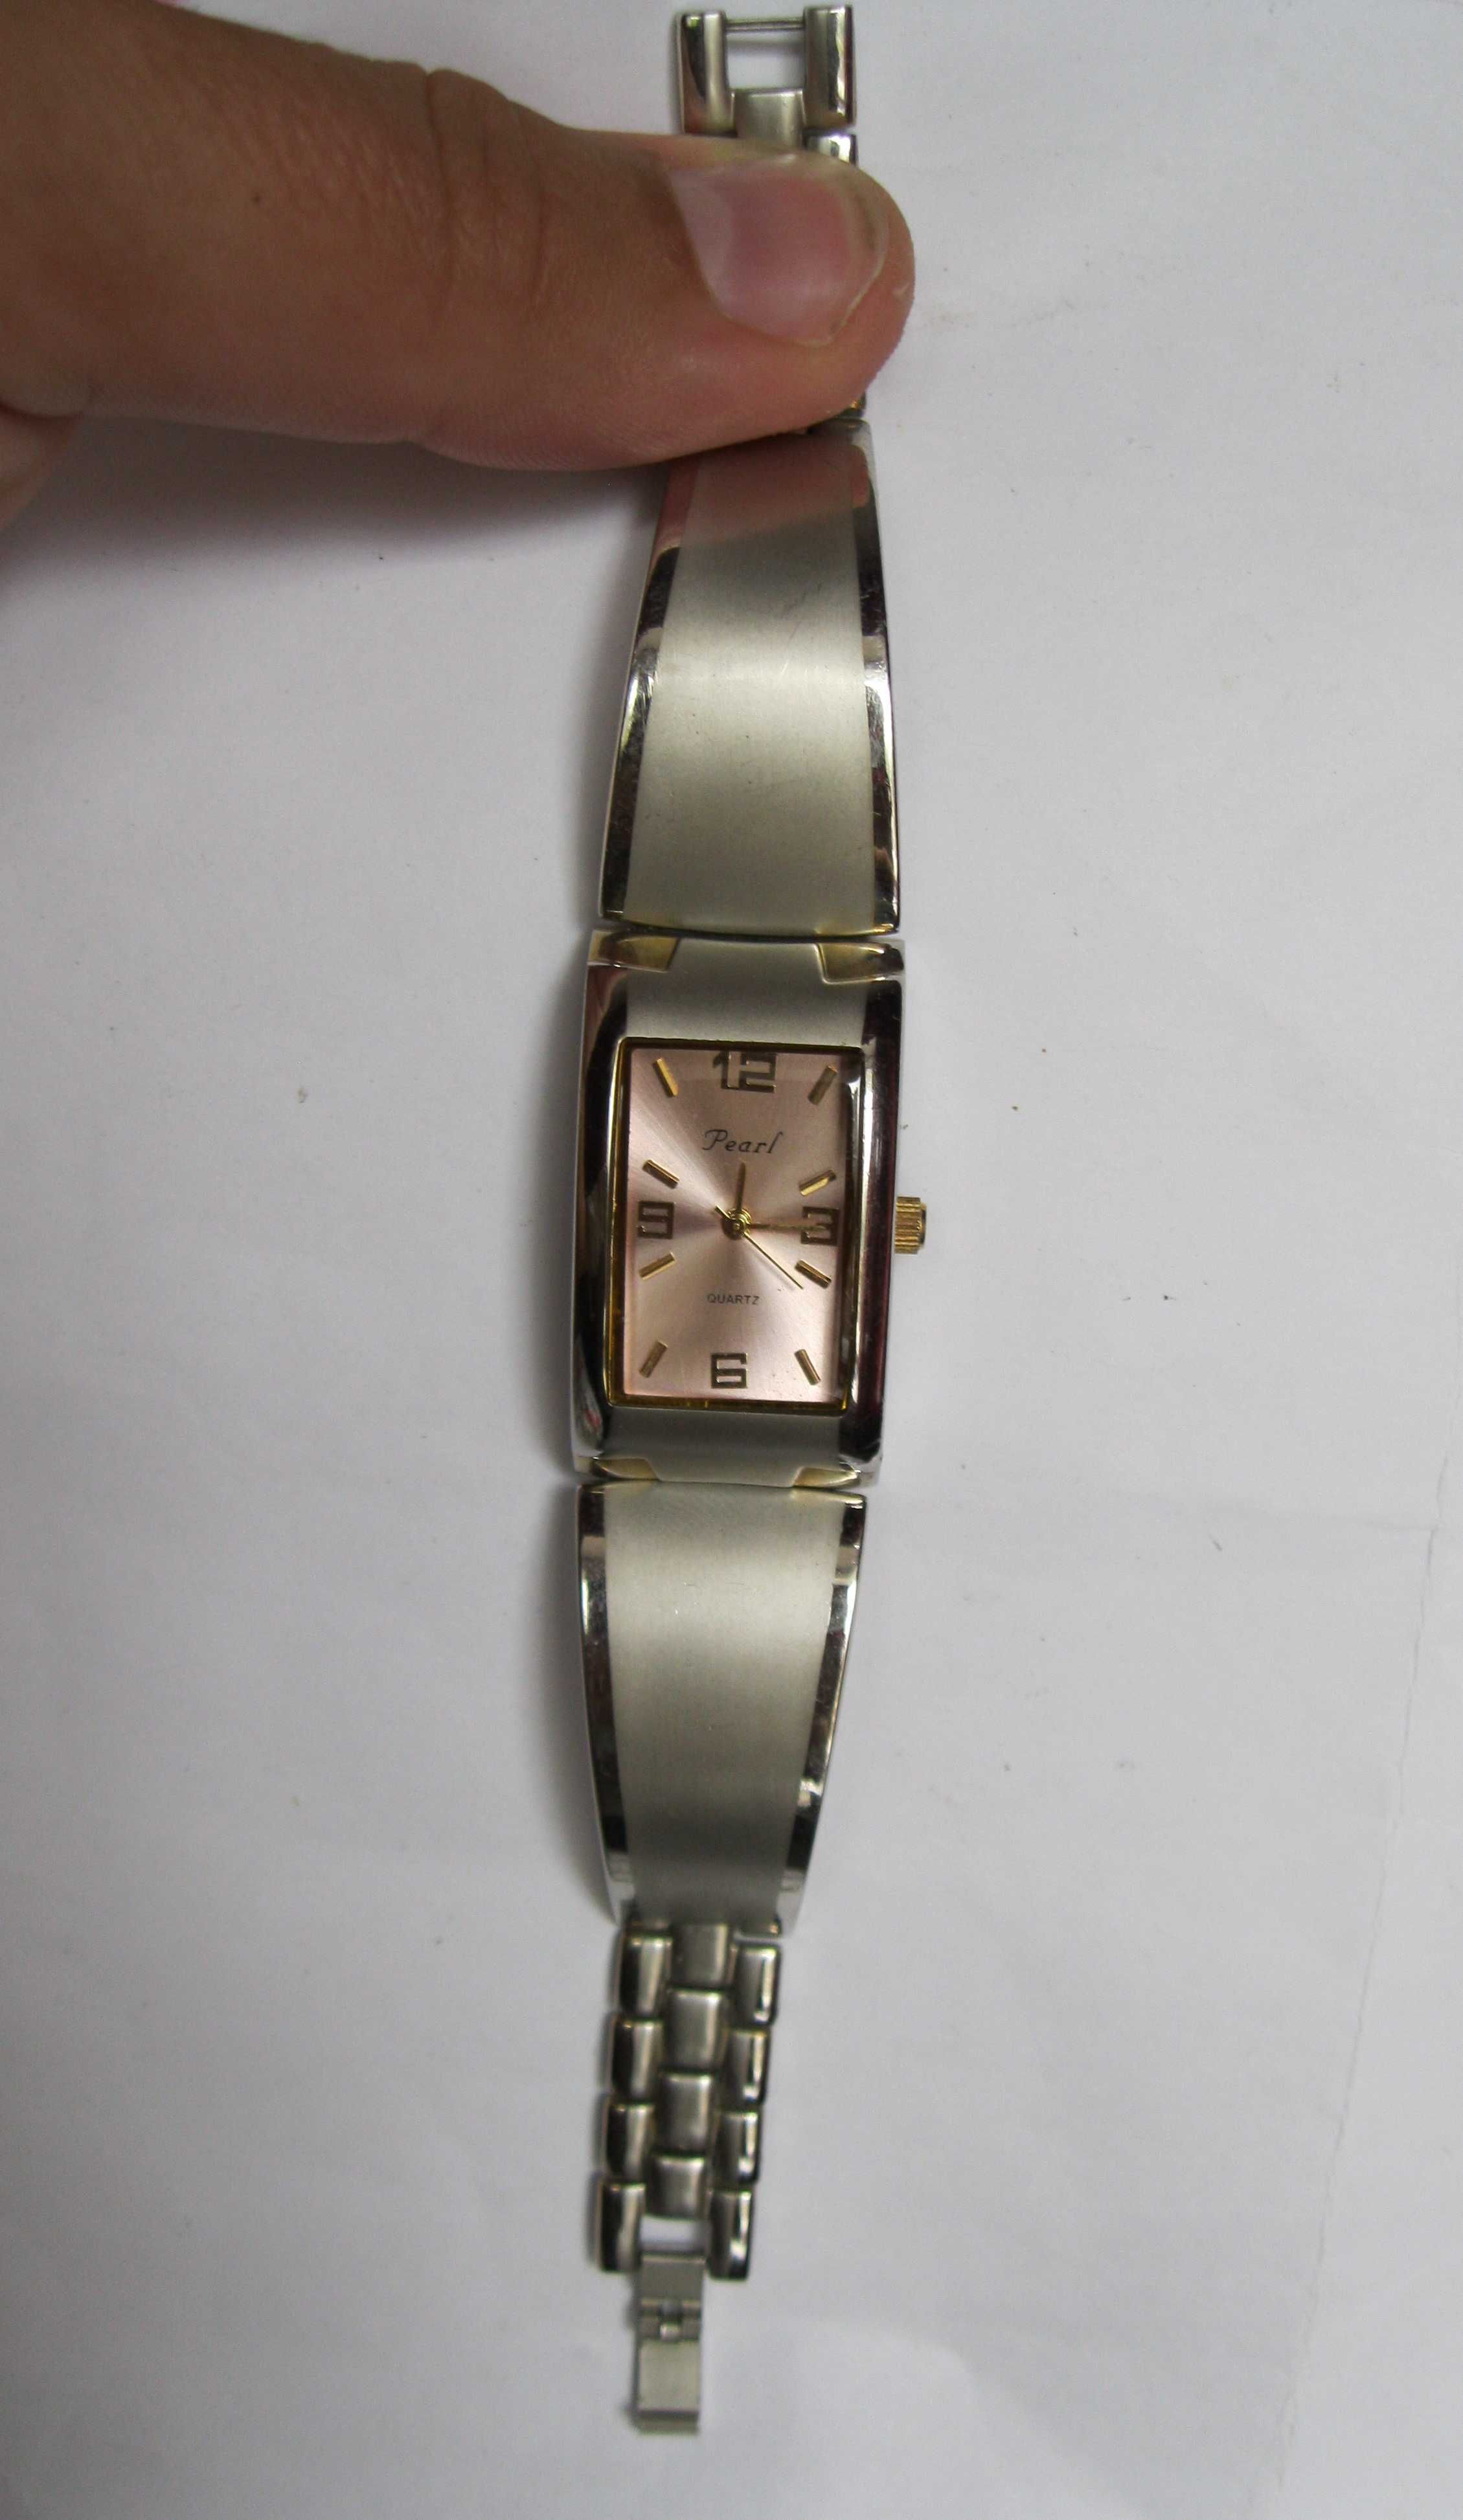 Женские наручные часы Pearl quartz (отличное состояние)